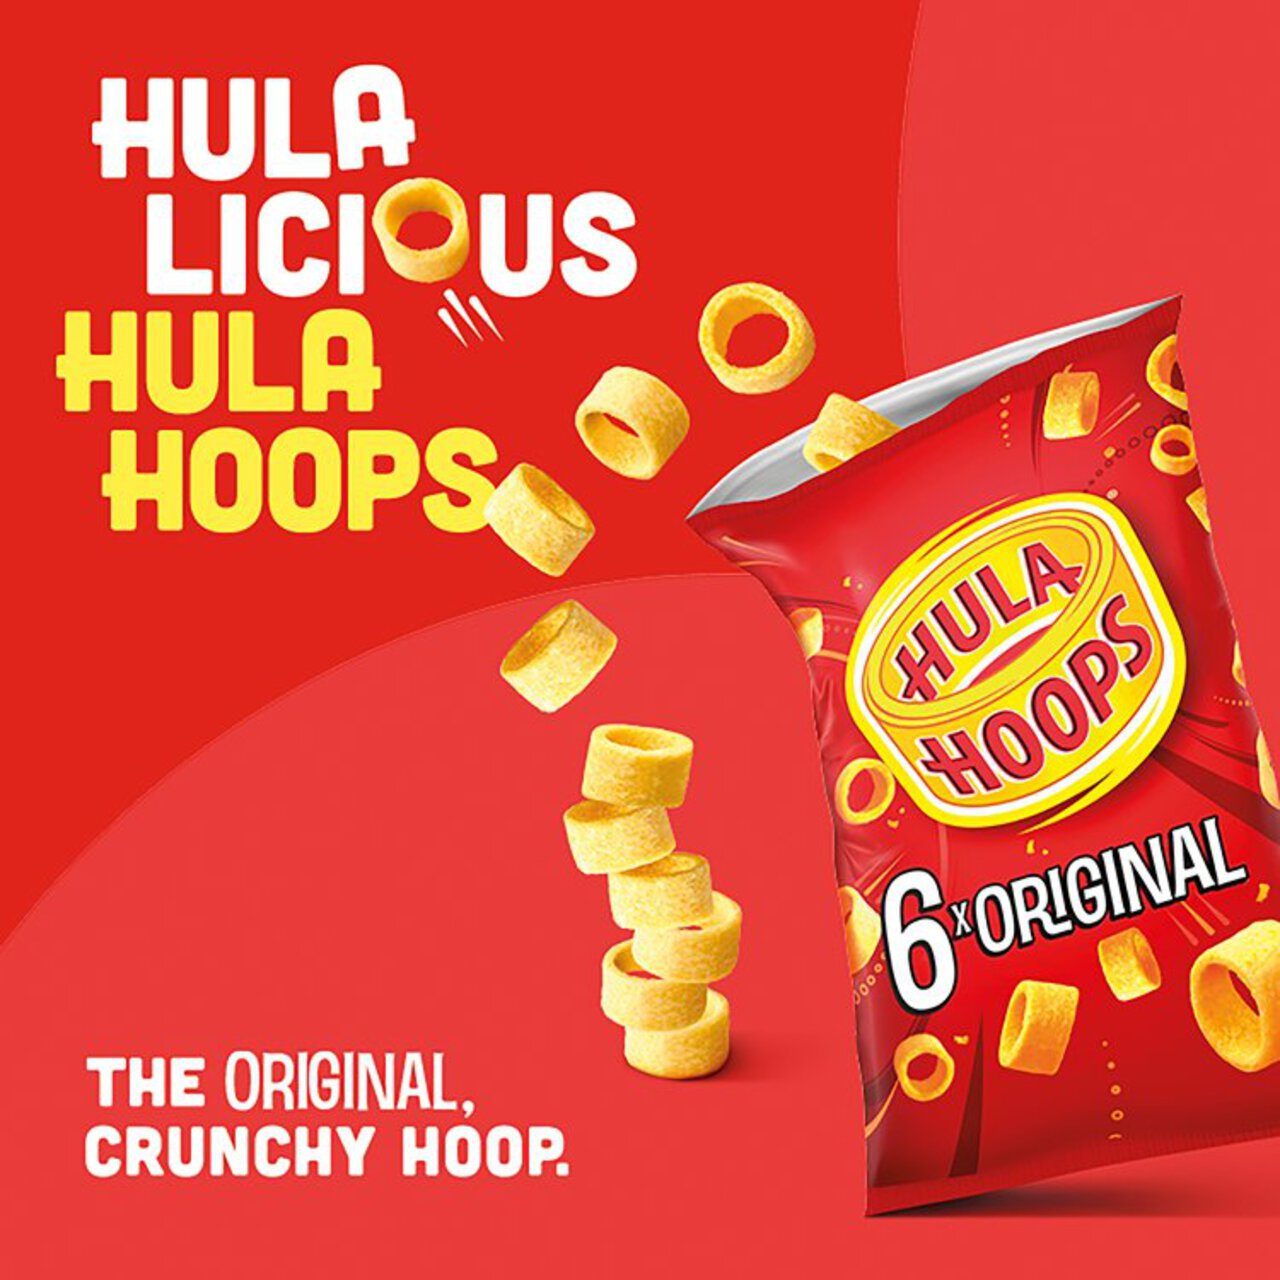 Hula Hoops Original Multipack Crisps Snacks 6 per pack